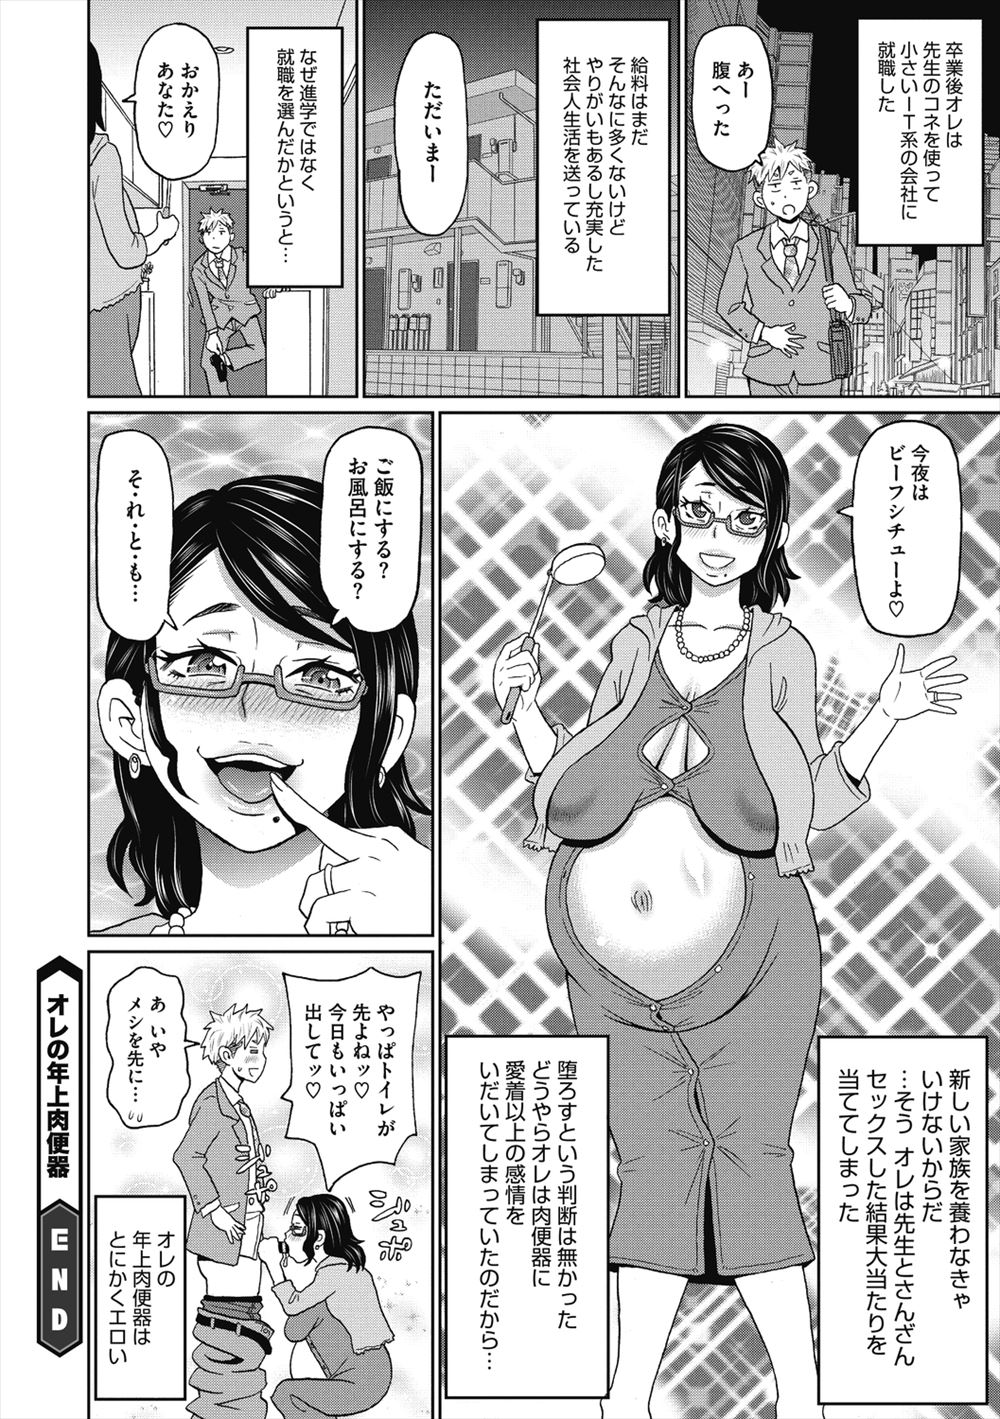 【エロ漫画】クソ真面目でヒステリックな爆乳教師のハメ撮り動画を見つけた男子生徒が肉便器調教して孕ませ結婚するｗ